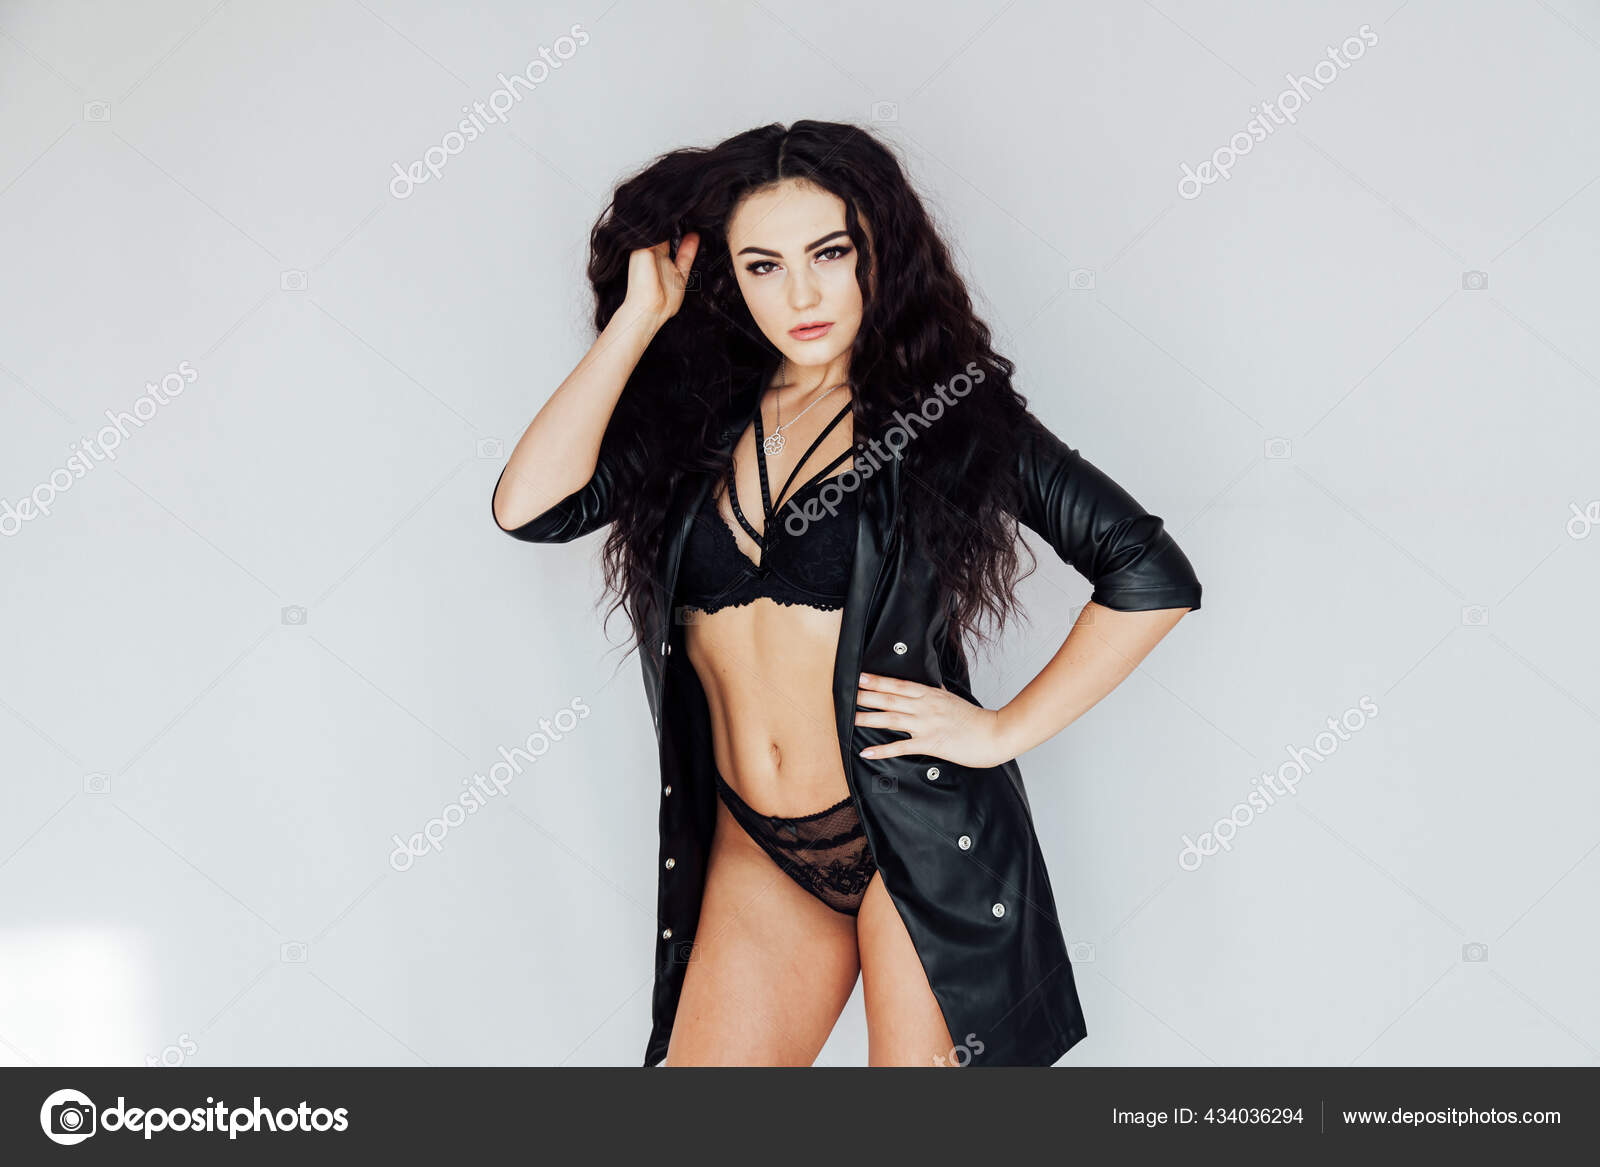 Portrait of a beautiful brunette woman in black lingerie posing